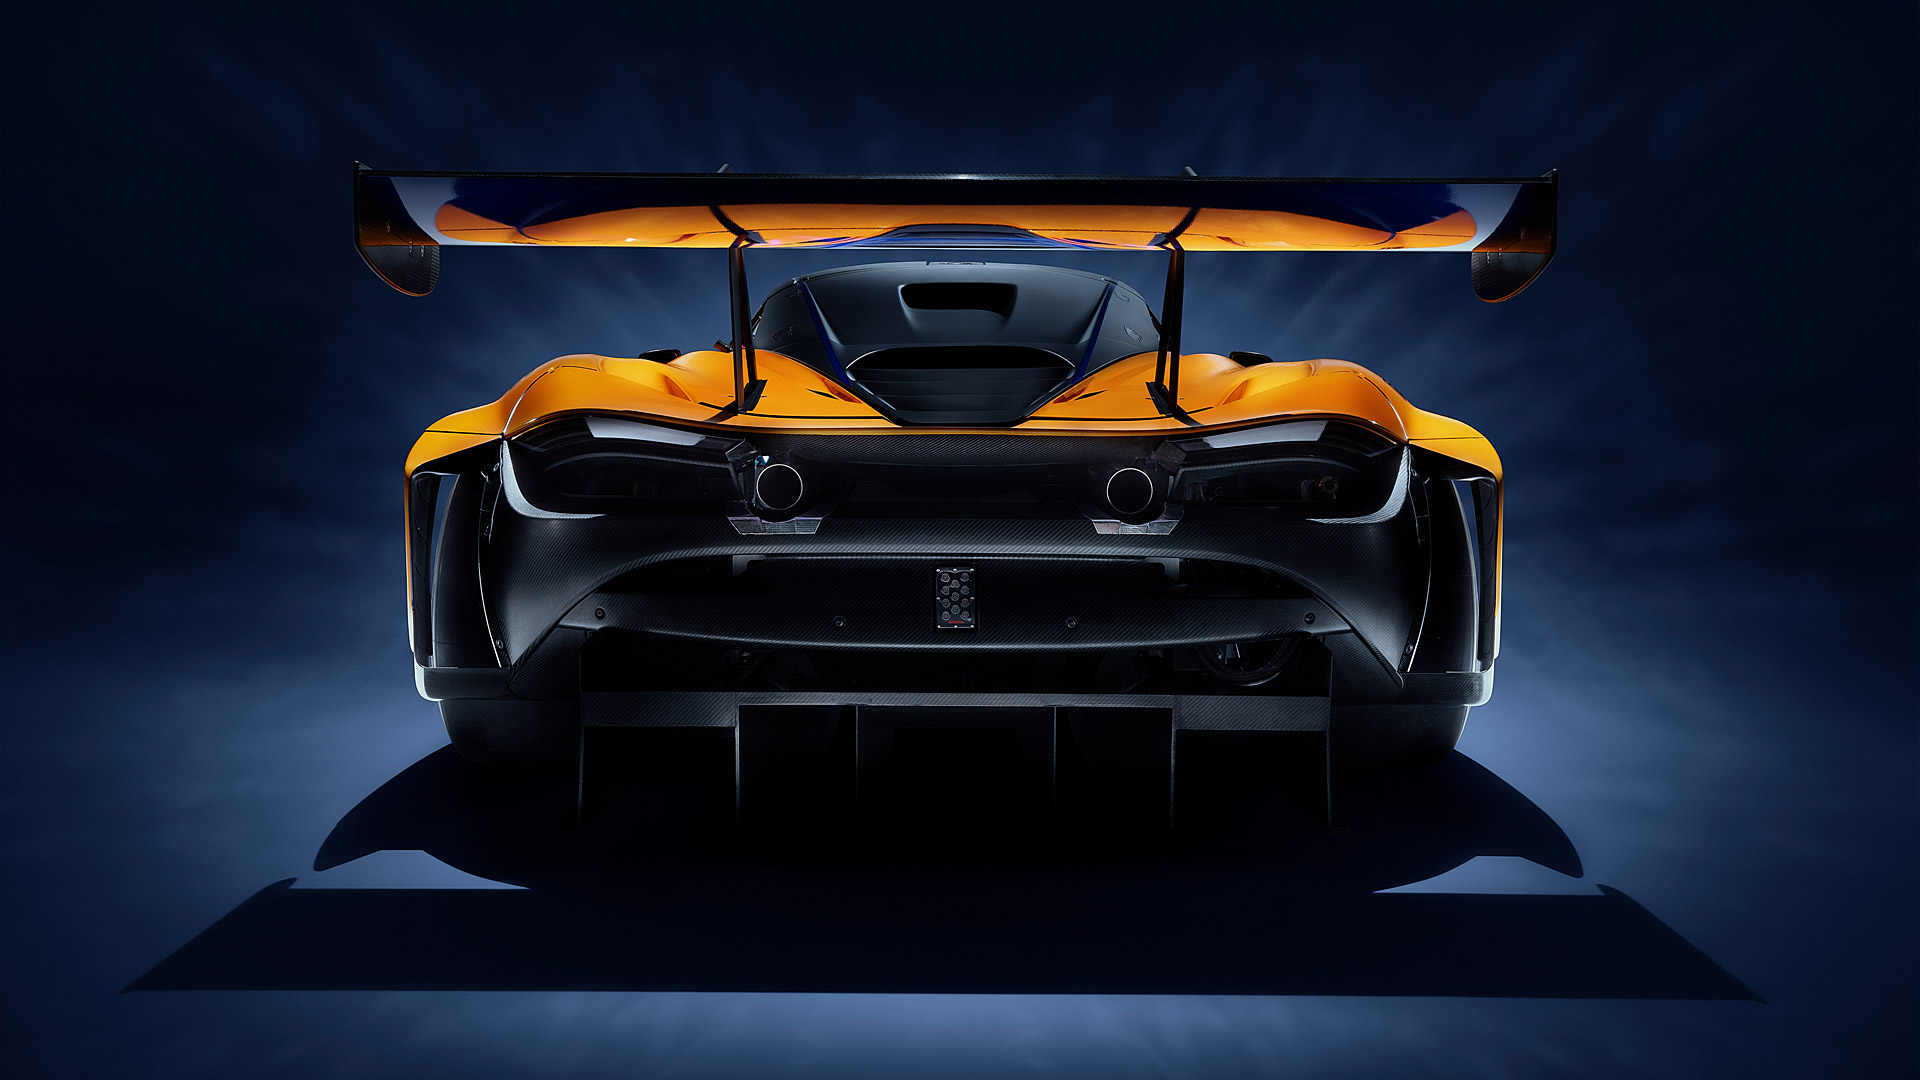  2019 McLaren 720S GT3 Wallpaper.